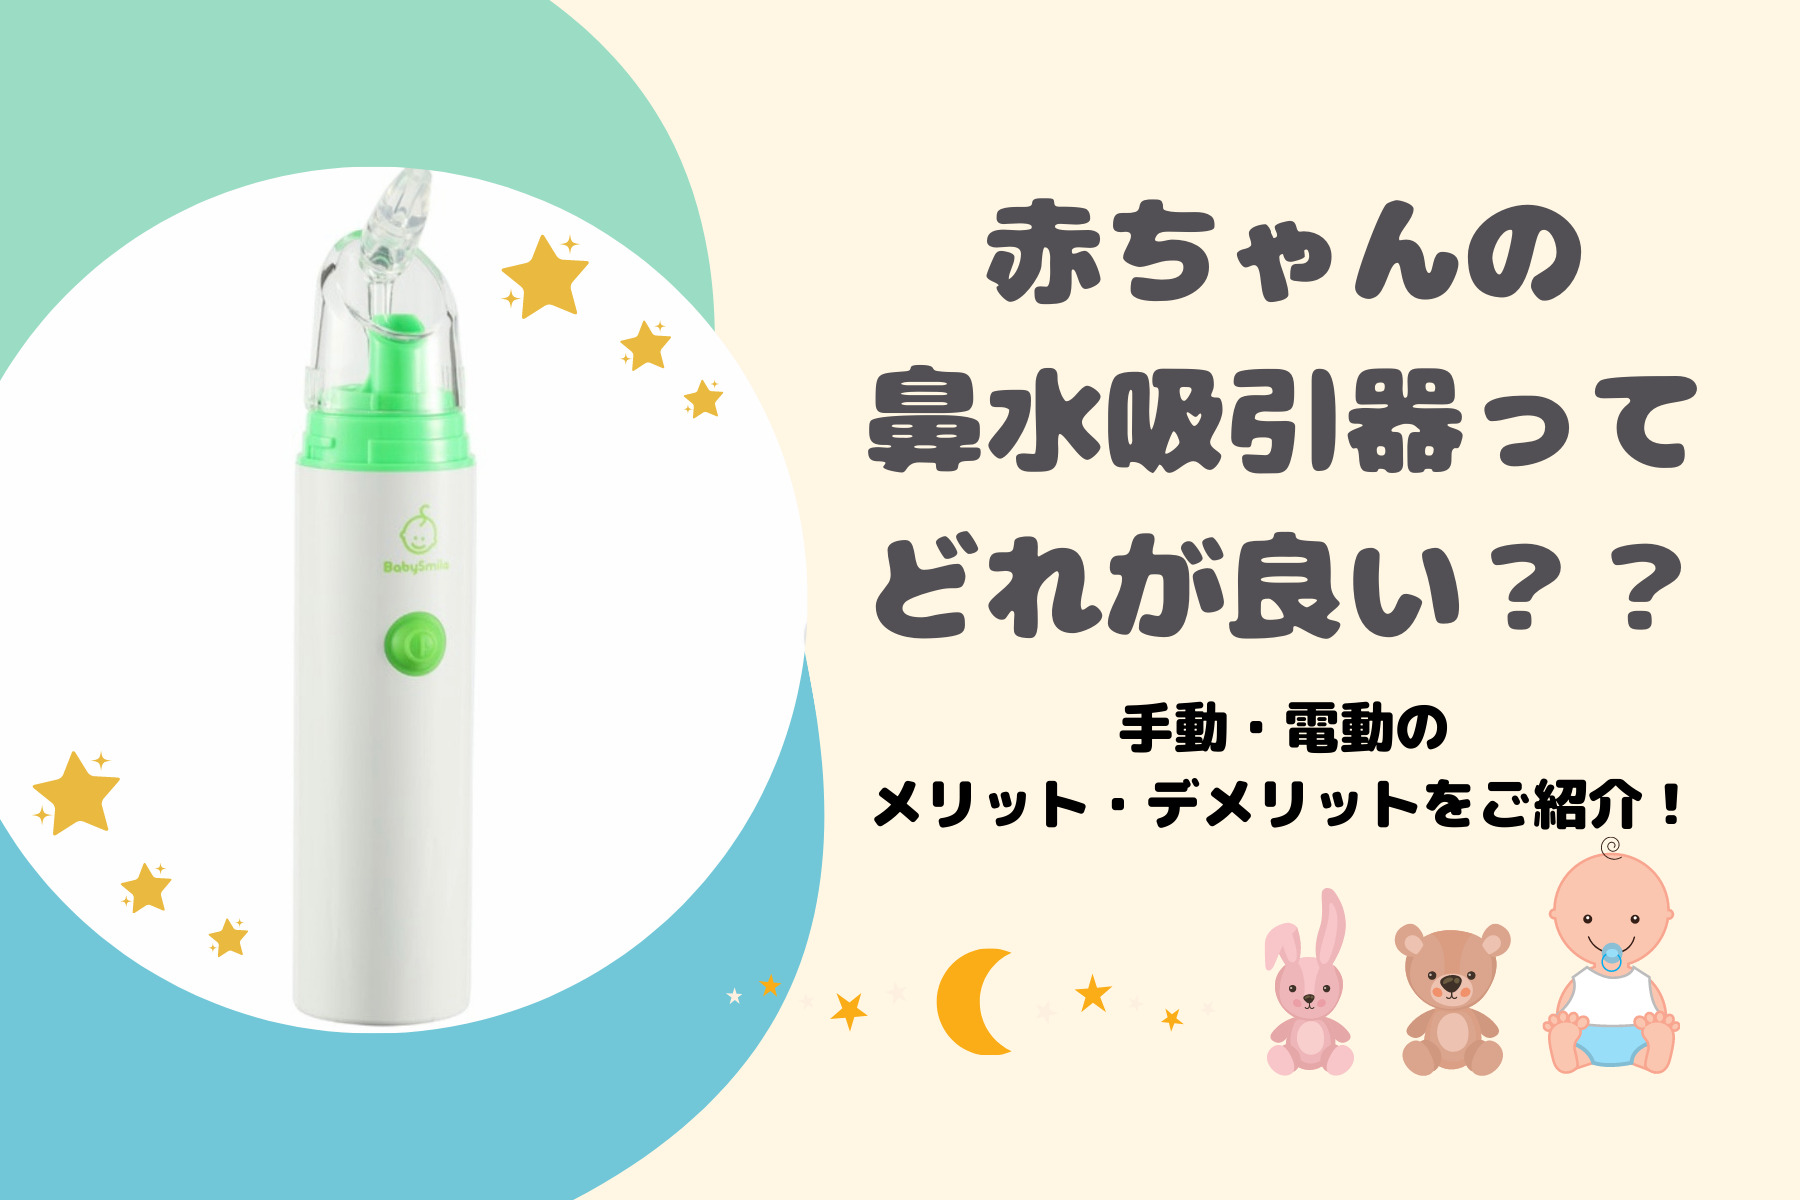 赤ちゃんの鼻吸い器 鼻水吸引器 を選ぶときのおすすめポイント ちゃきちゃきコアラ生活ブログ